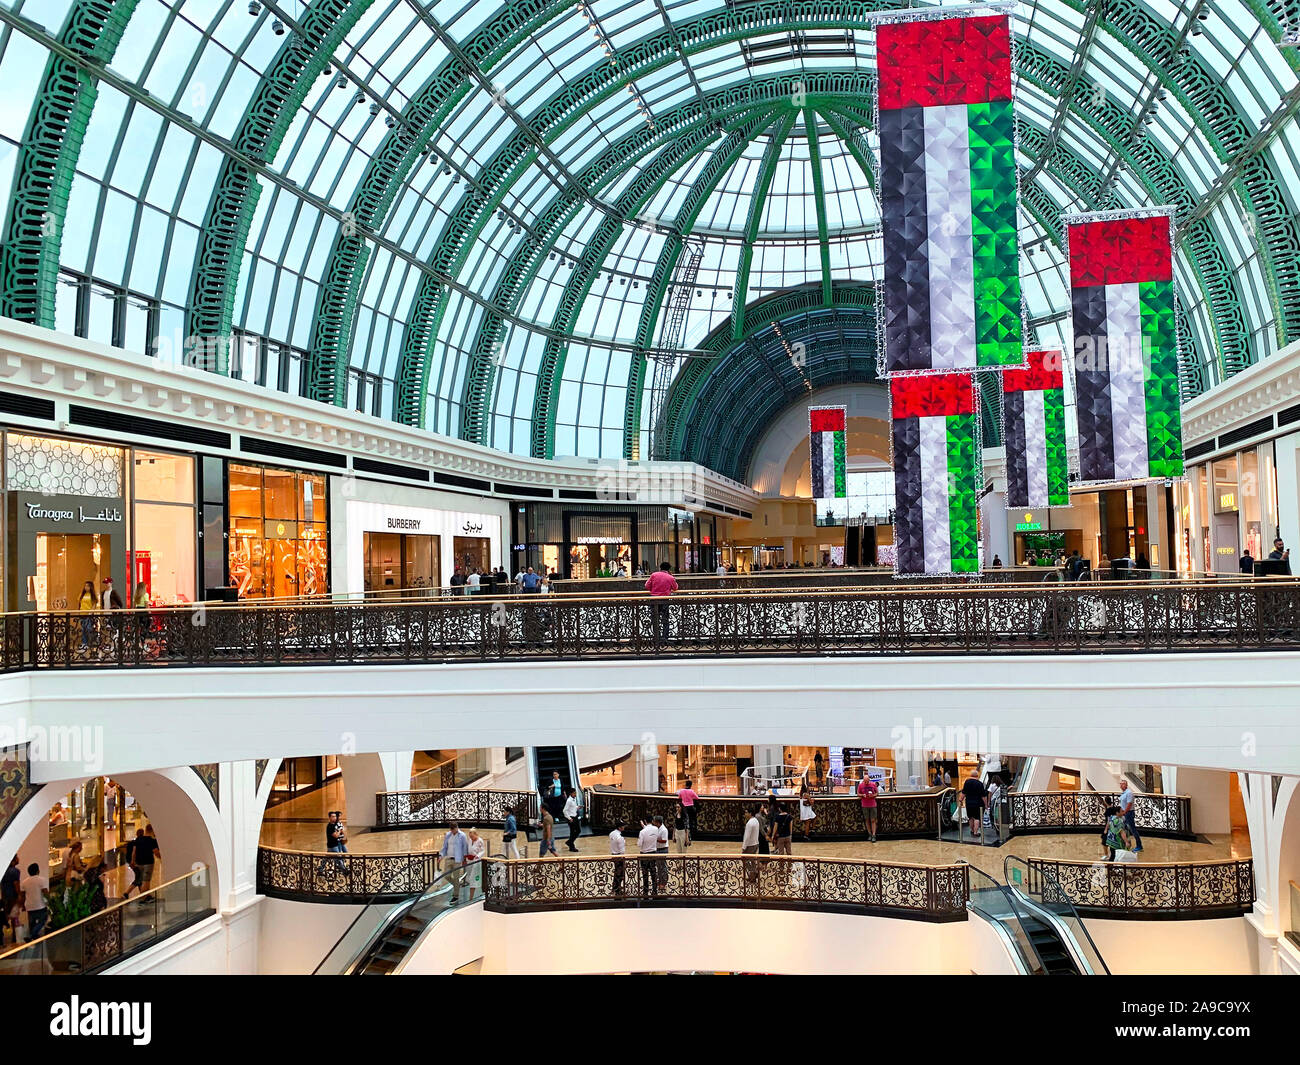 Dubaï / Emirats arabes unis - 10 novembre 2019 : centre commercial Mall of the Emirates décorations pour Fête Nationale. Décoration drapeaux nationaux des EAU. Jour de l'indépendance. Le jour du drapeau Banque D'Images